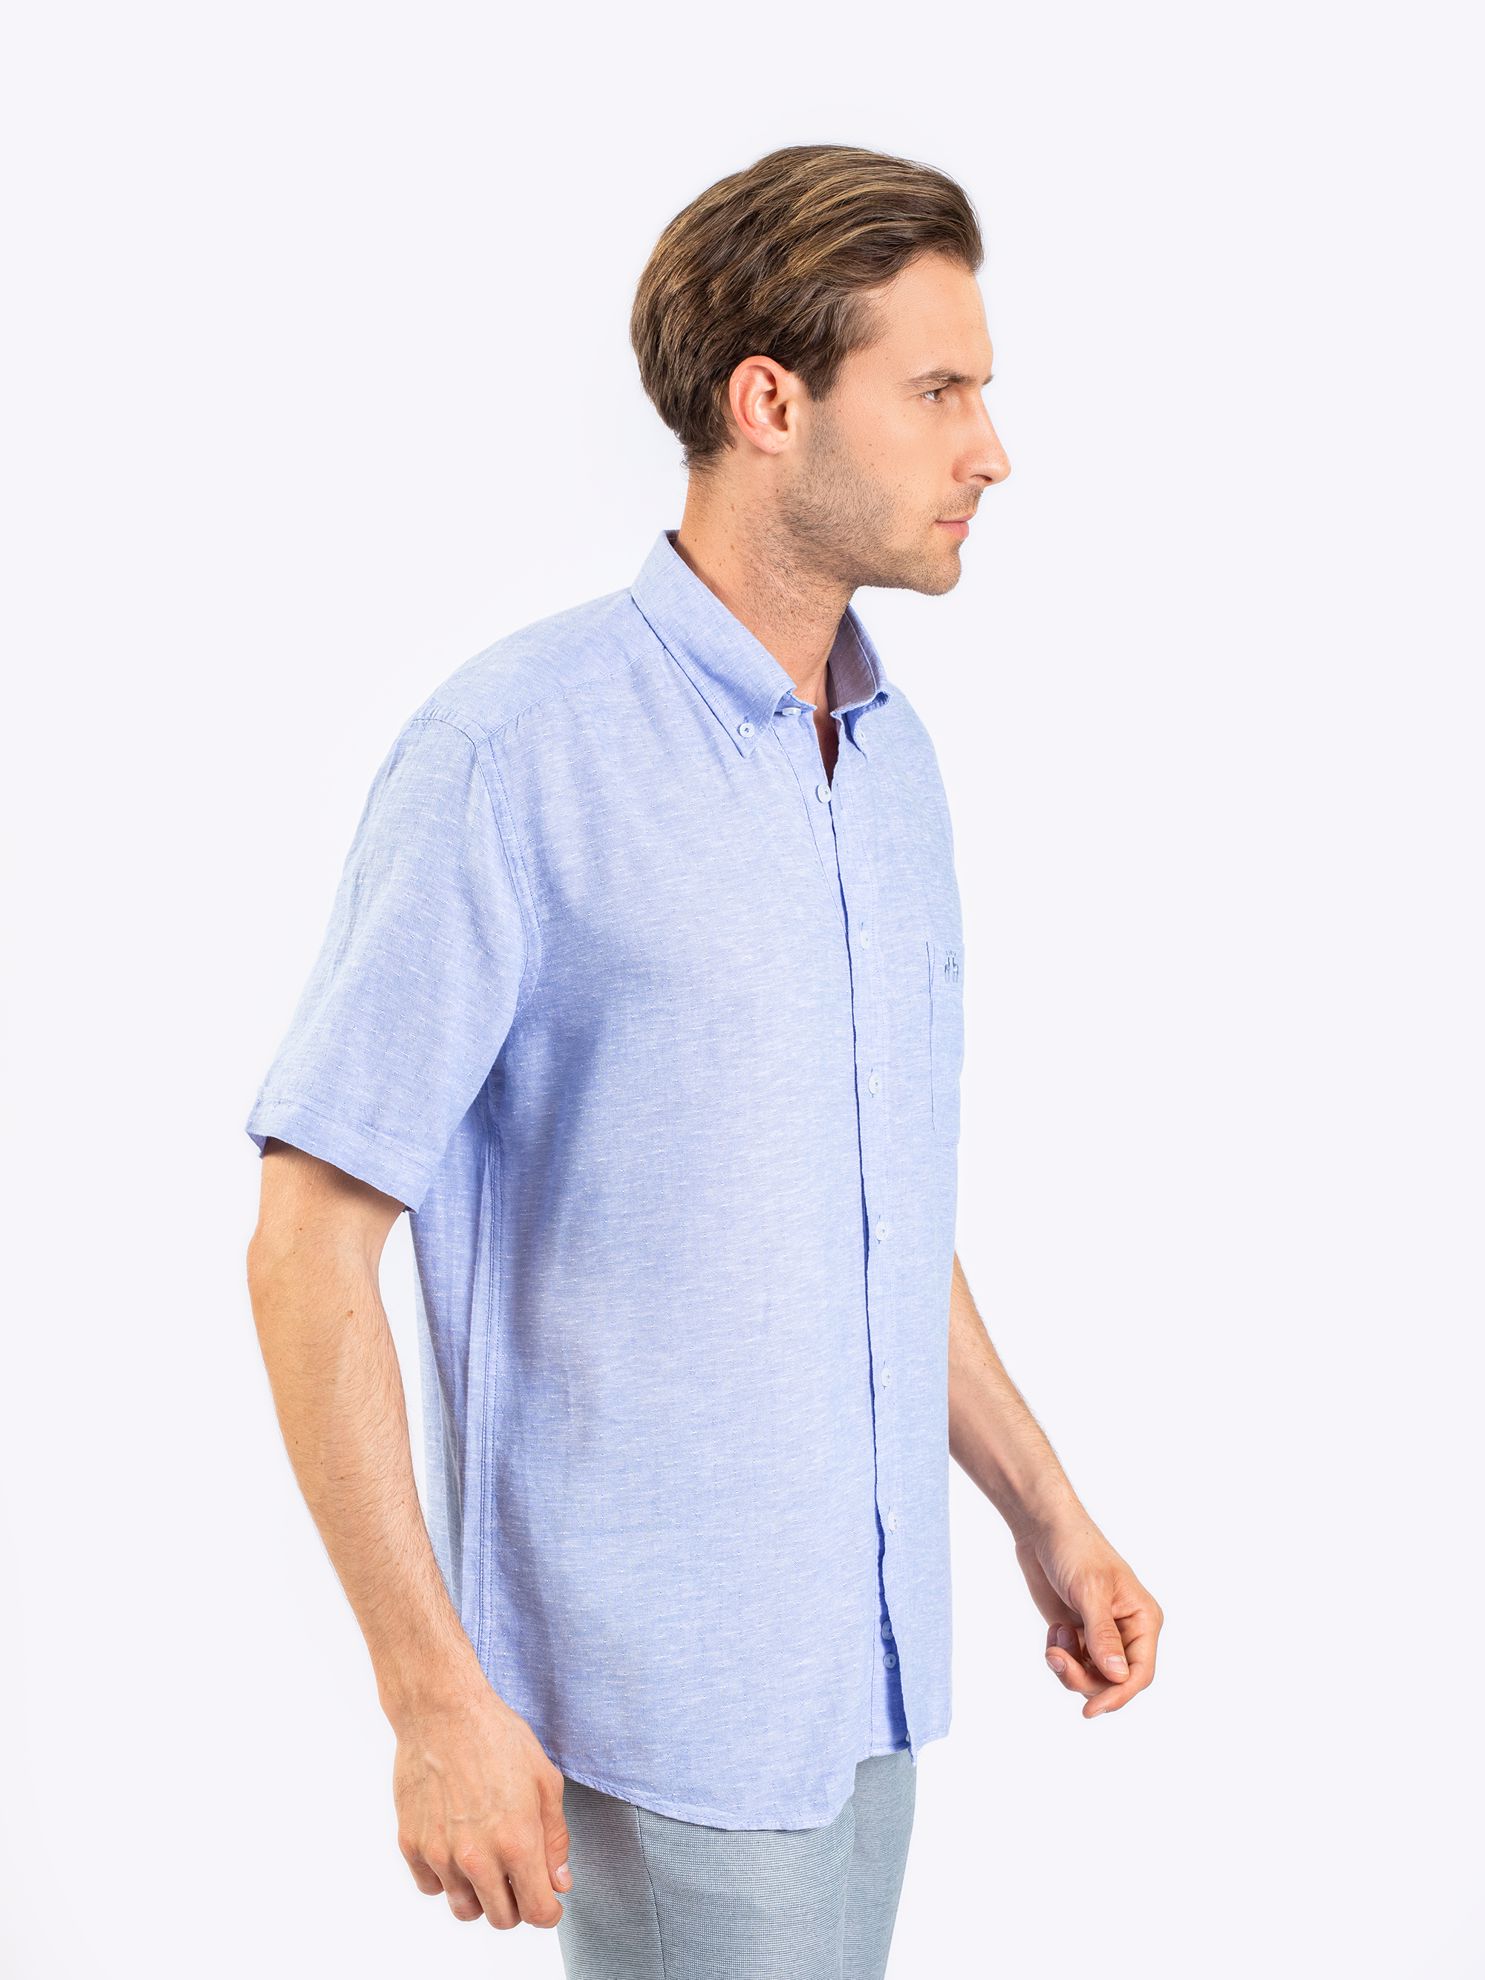 Karaca Erkek Büyük Beden Gömlek-Mavi. ürün görseli